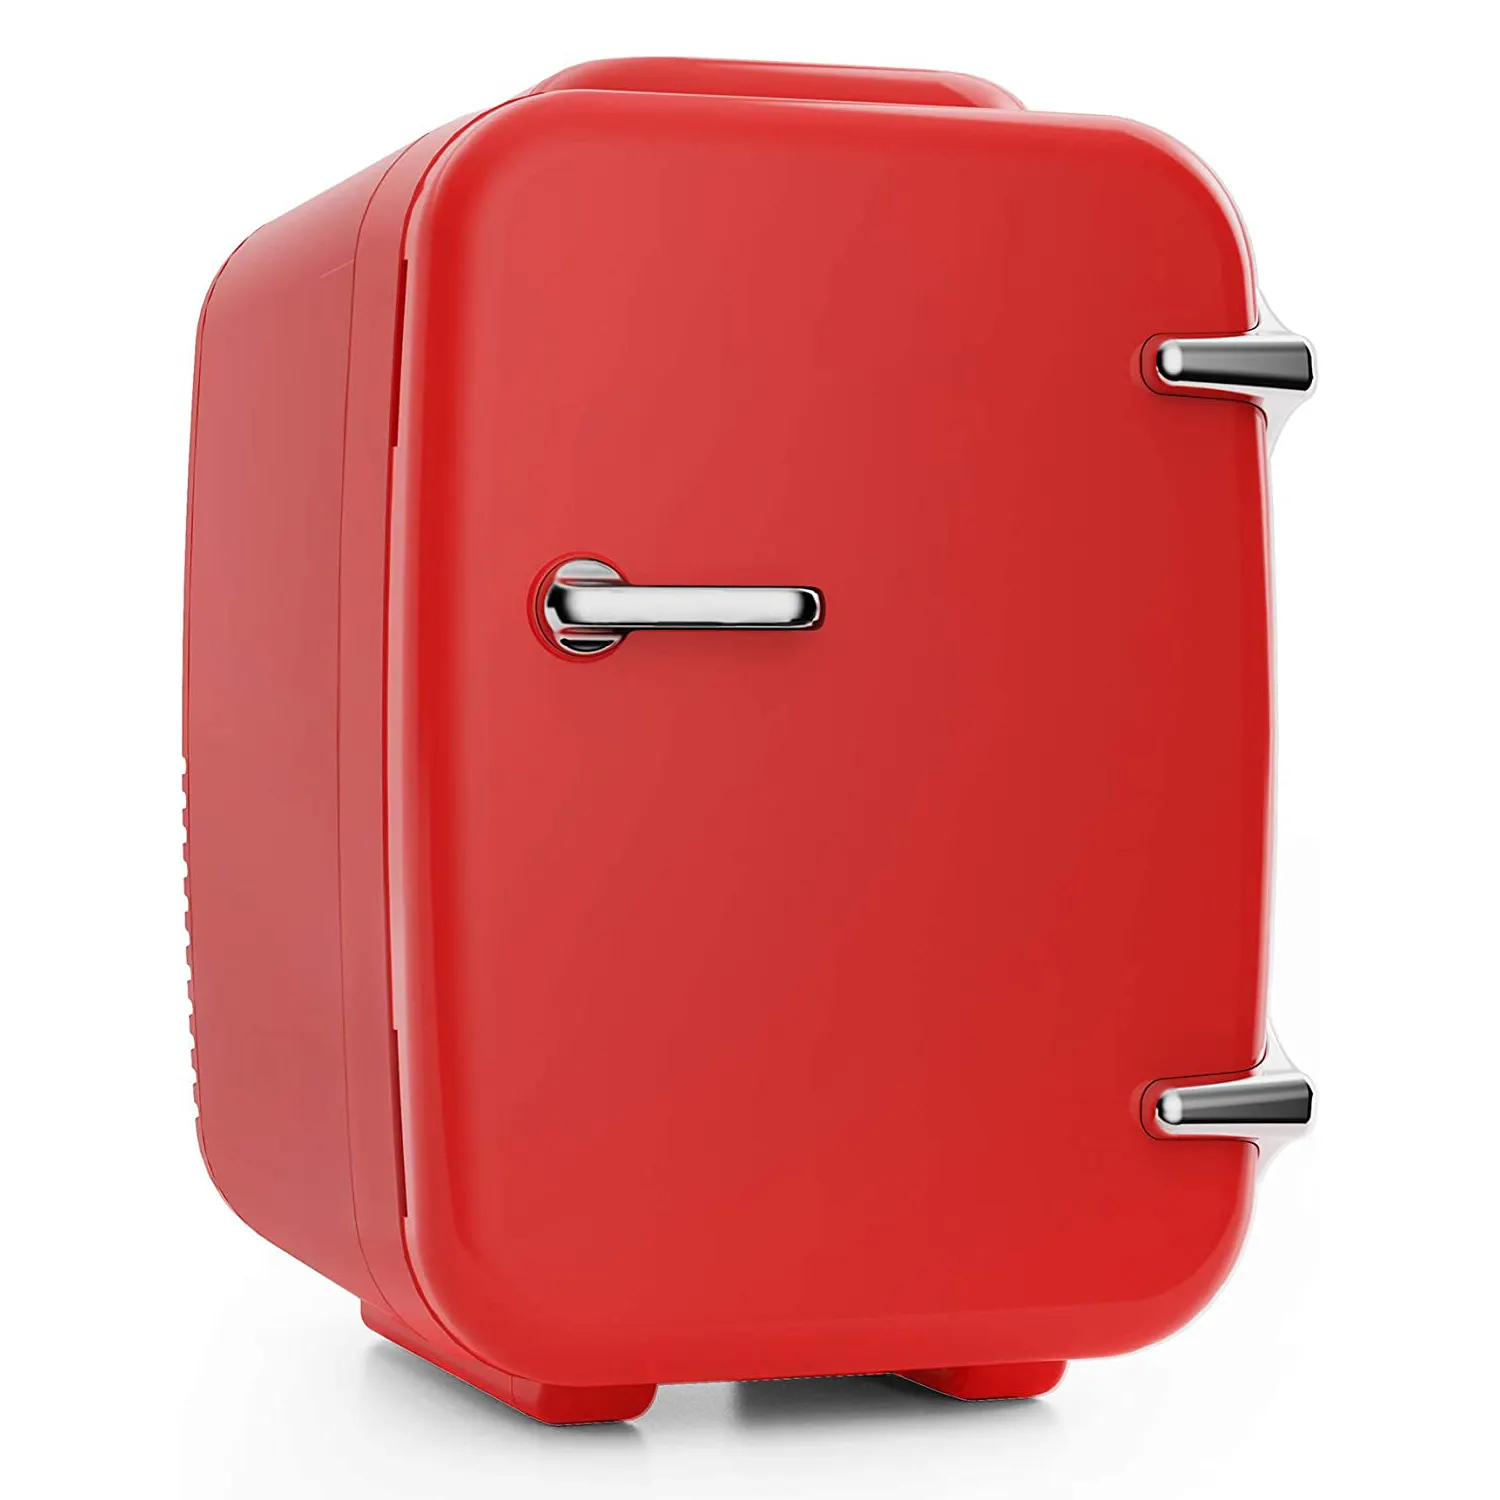 4L klasik sıcak satış mini buzdolabı taşınabilir elektrikli araç buzdolabı 12v mini taşınabilir soğutucular